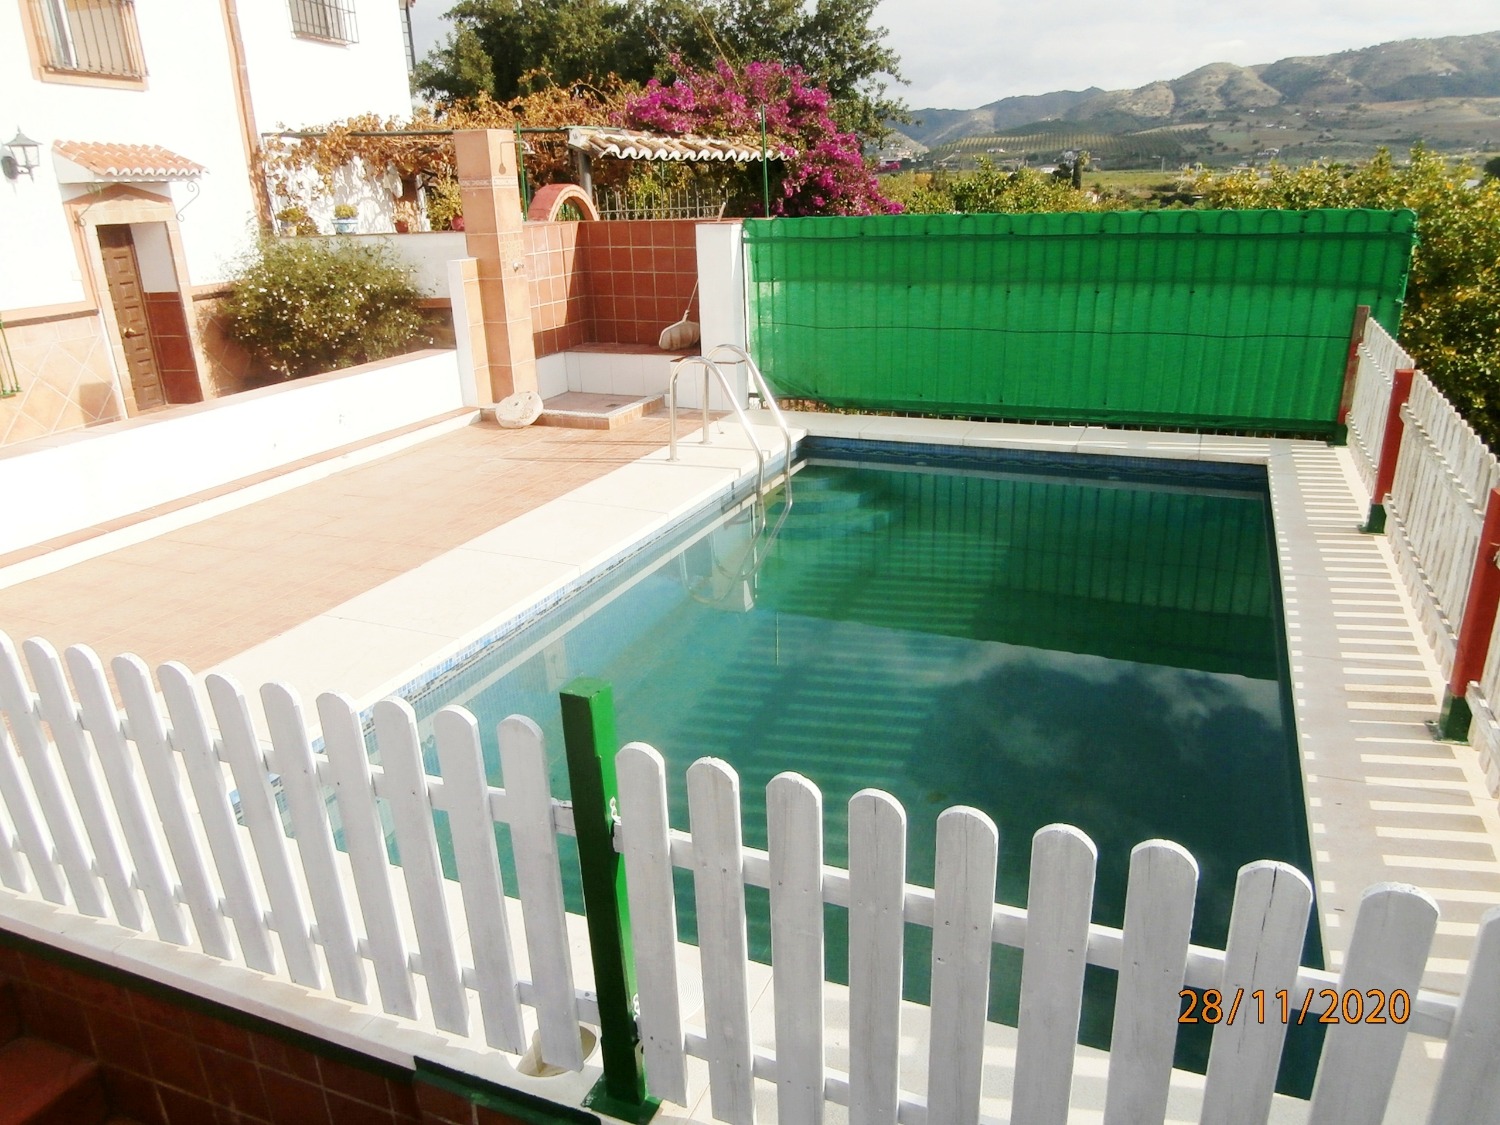 Grande casa di campagna bifamiliare in stile andaluso con piscina, seminativo, completamente recintata 3.220 m2 ca, buon accesso.